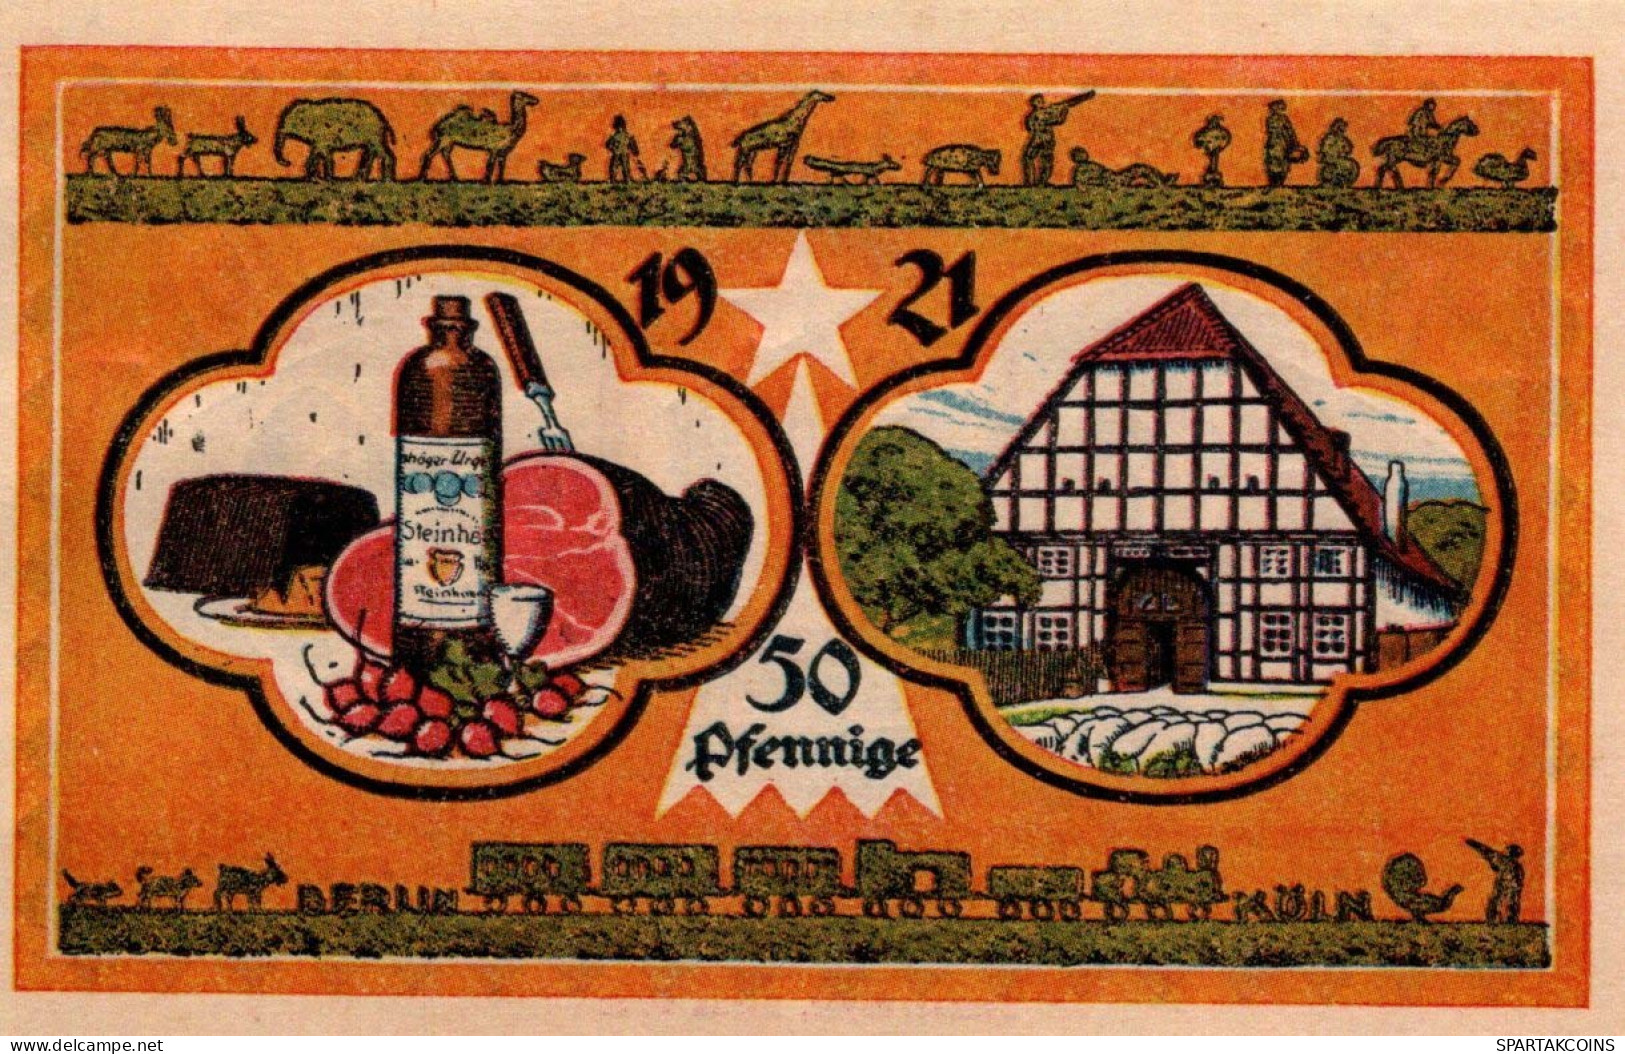 50 PFENNIG 1921 Stadt STEINHEIM IN WESTFALEN Westphalia UNC DEUTSCHLAND #PI962 - [11] Lokale Uitgaven